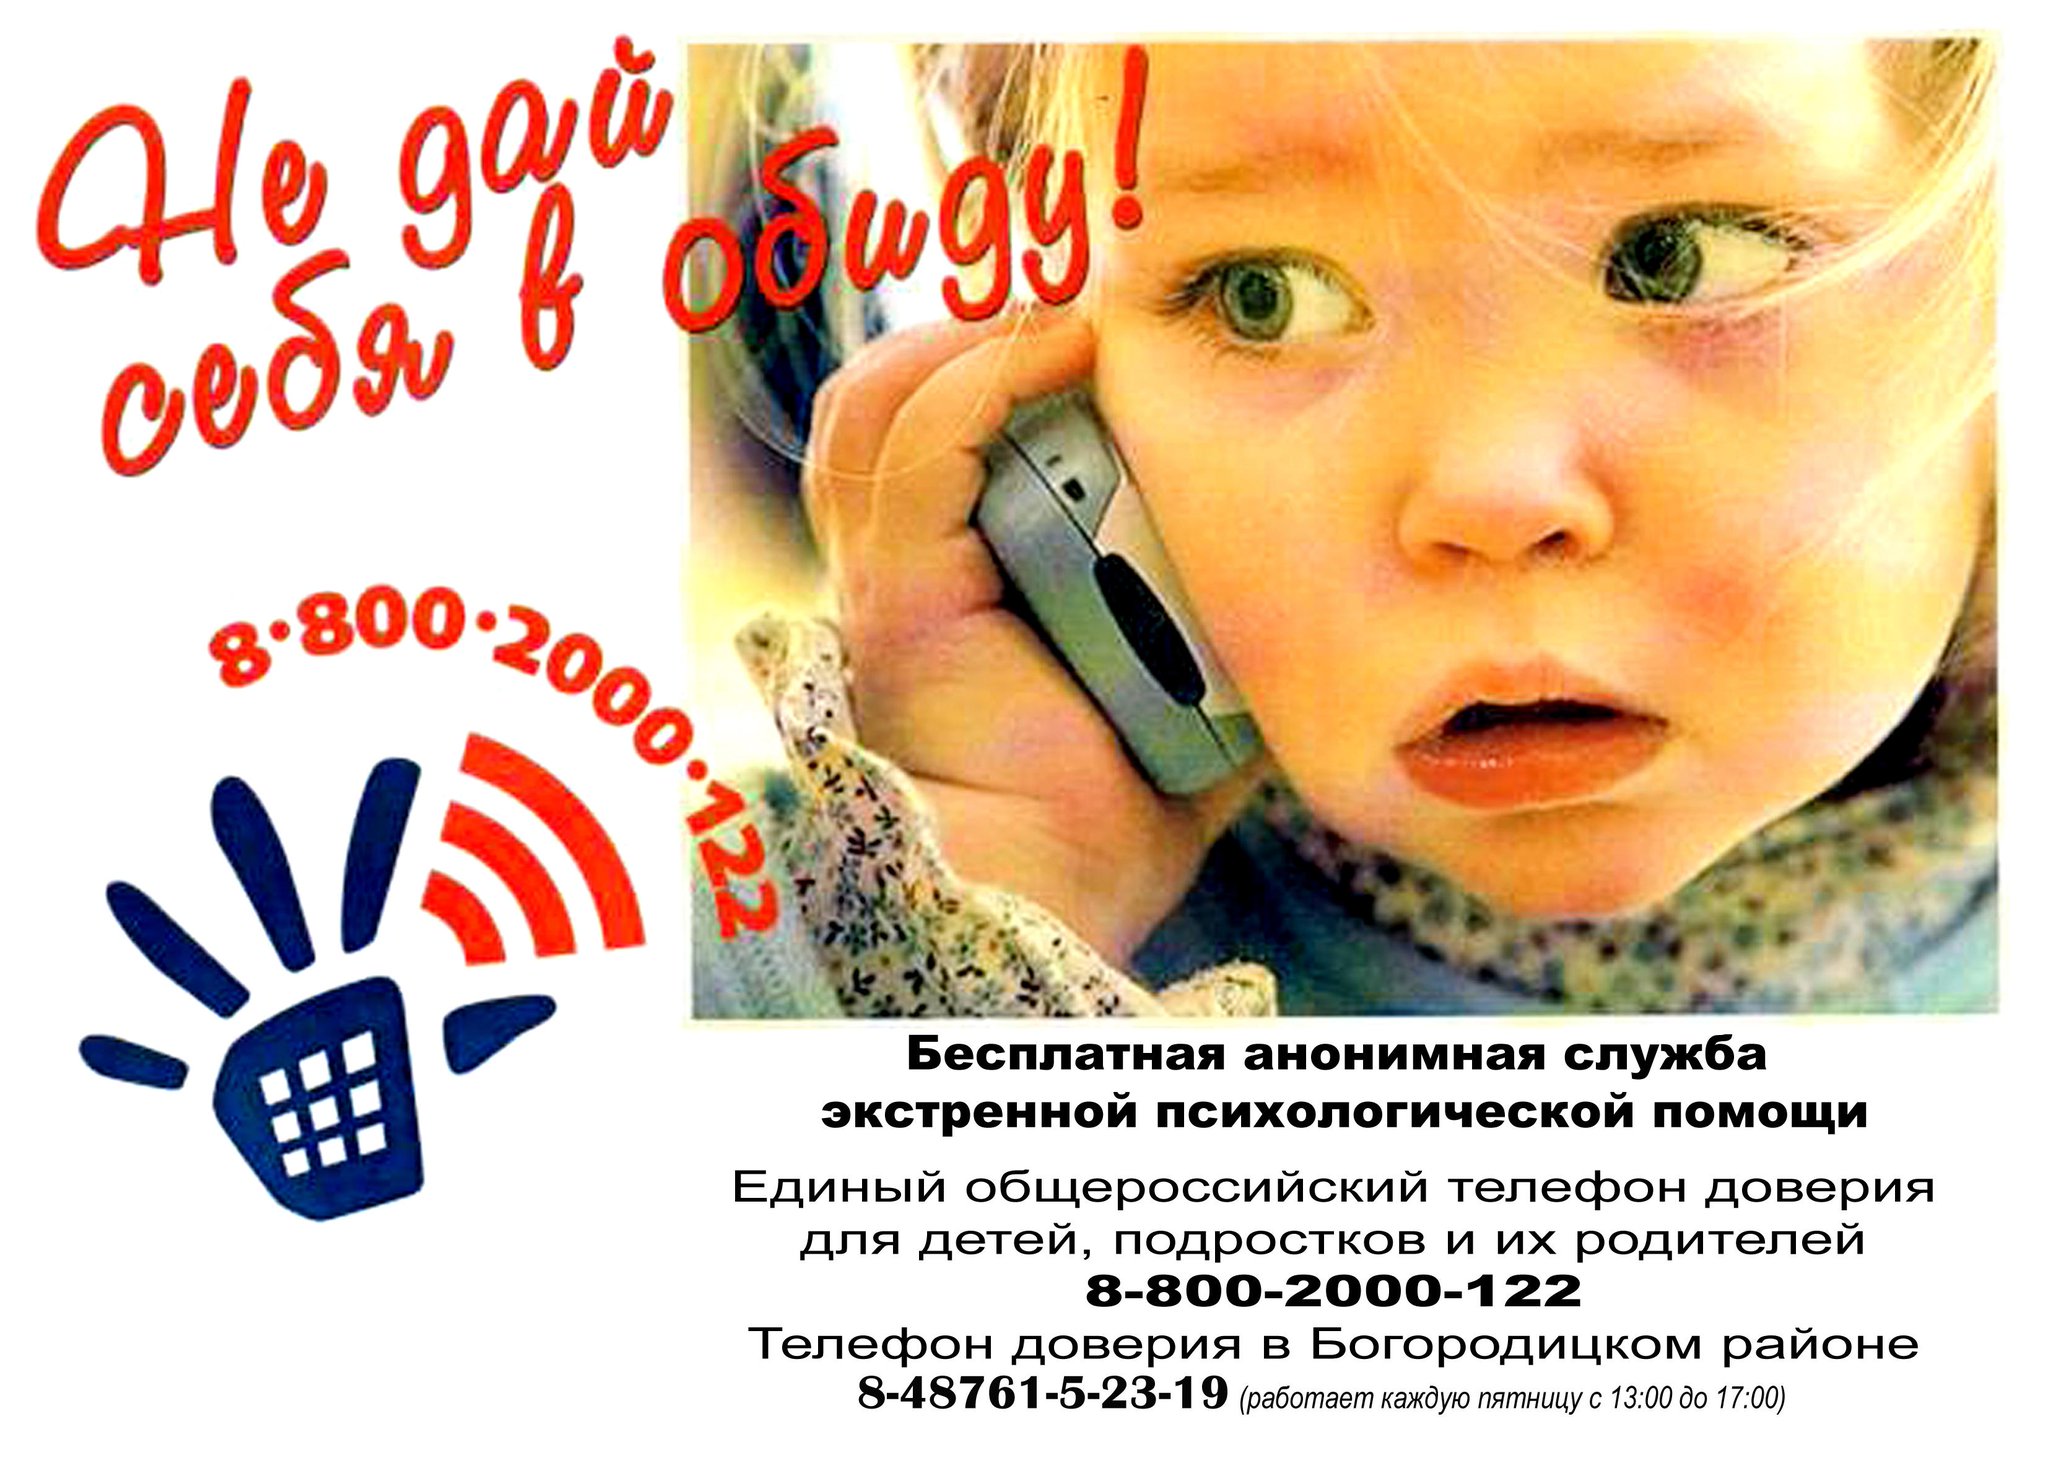 Я знаю номер детского телефона доверия. Единый детский телефон доверия 8-800-2000-122. Телефон доверия. Телефон доверия для детей. Детские телефоны доверия.